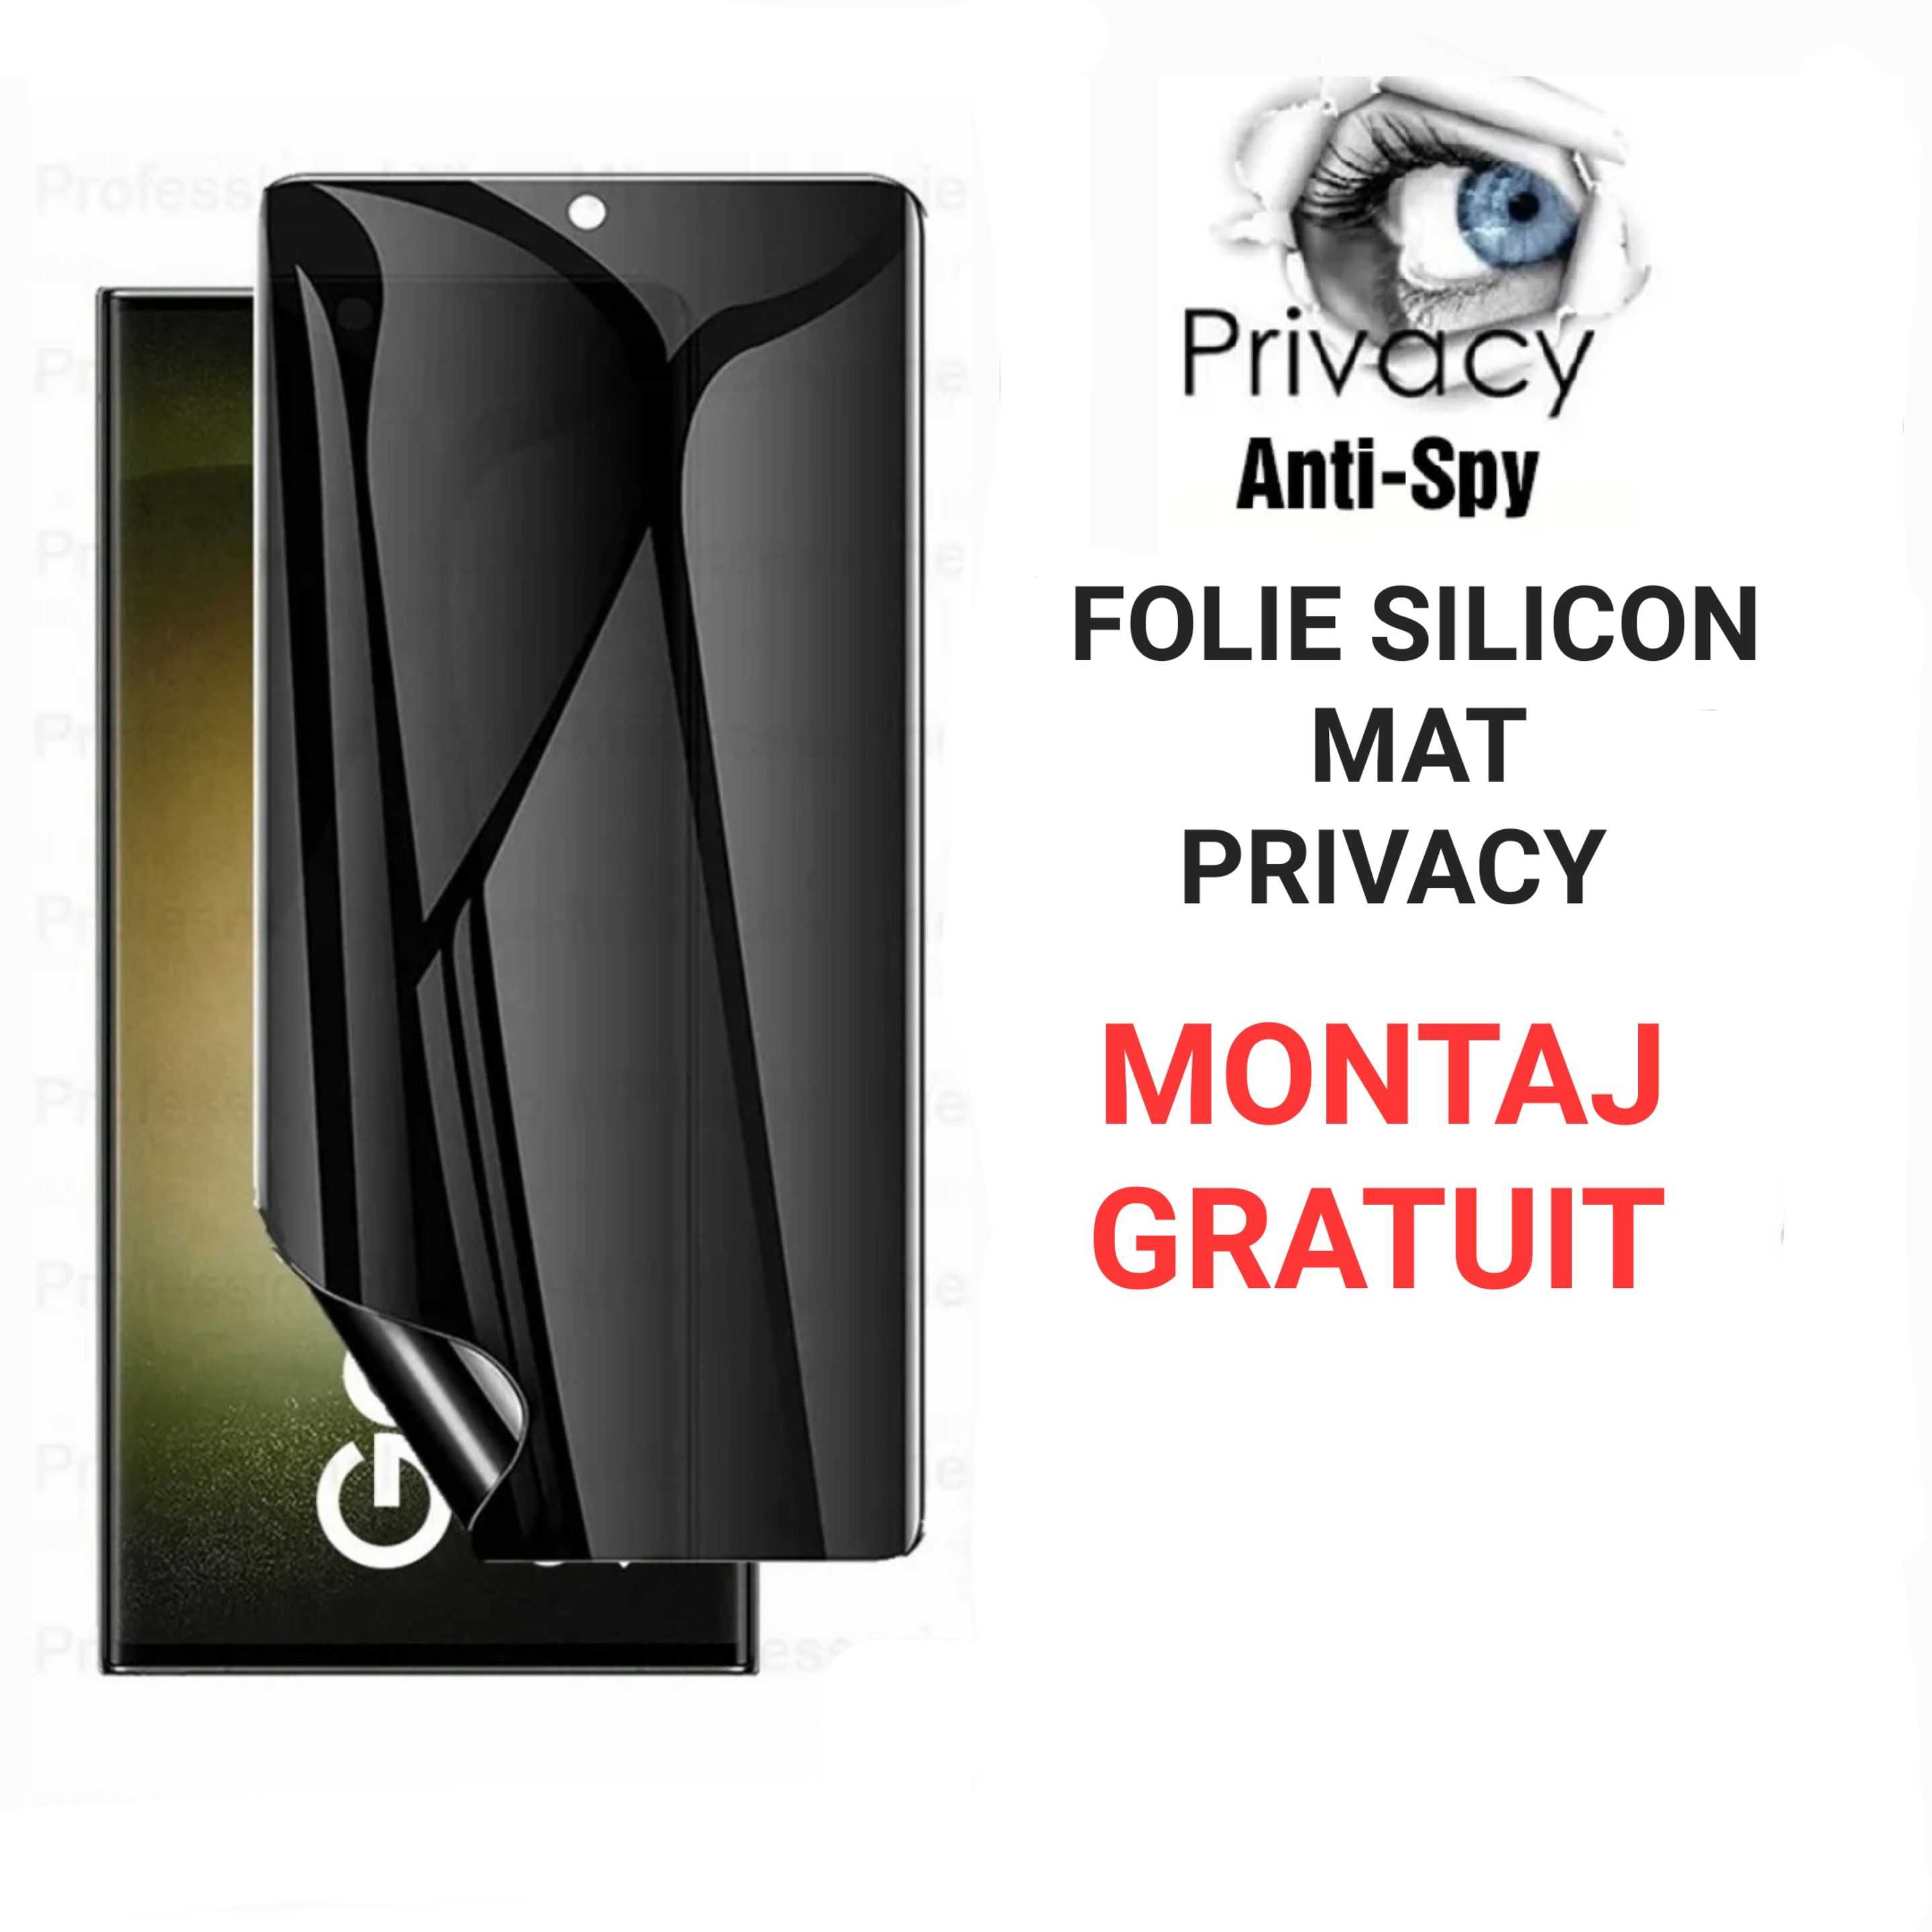 Folie Silicon Privacy Mata /Anti-Spy Samsung S20 S21 S22 S23 Ultra